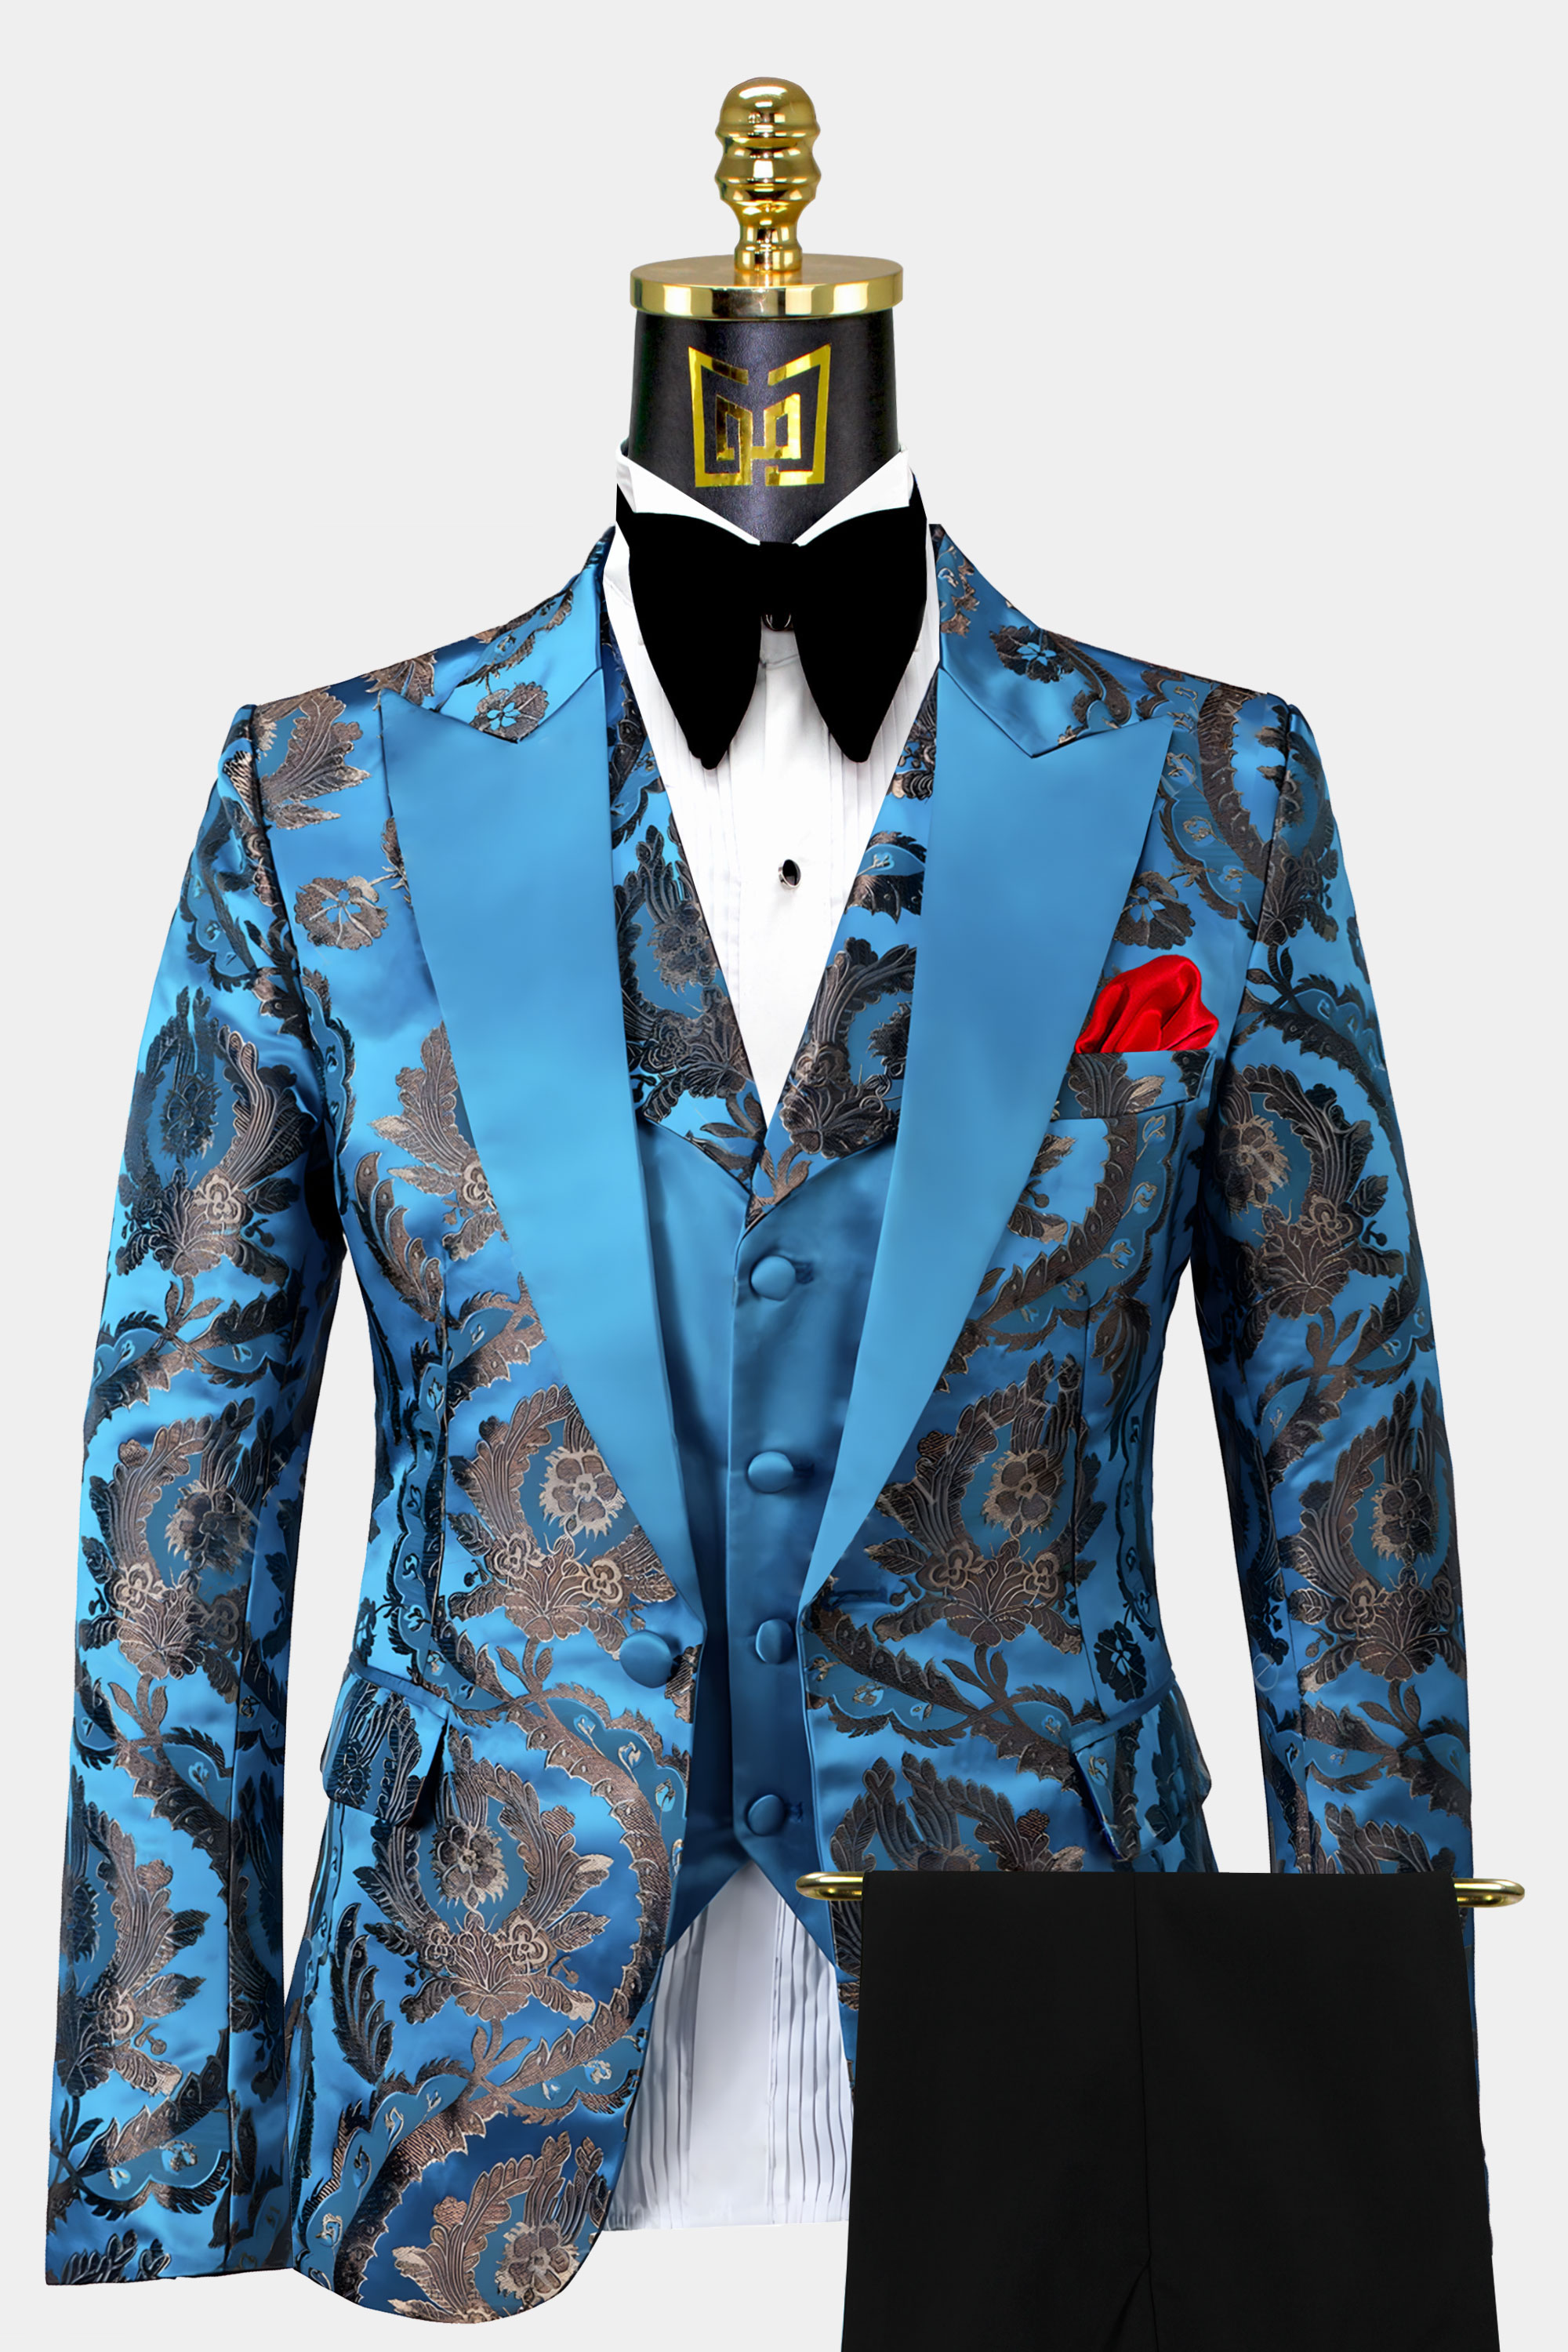 Light-Blue-Tuxedo-Groom-Wedding-Suit-For-Men-from-Gentlemansguru.com